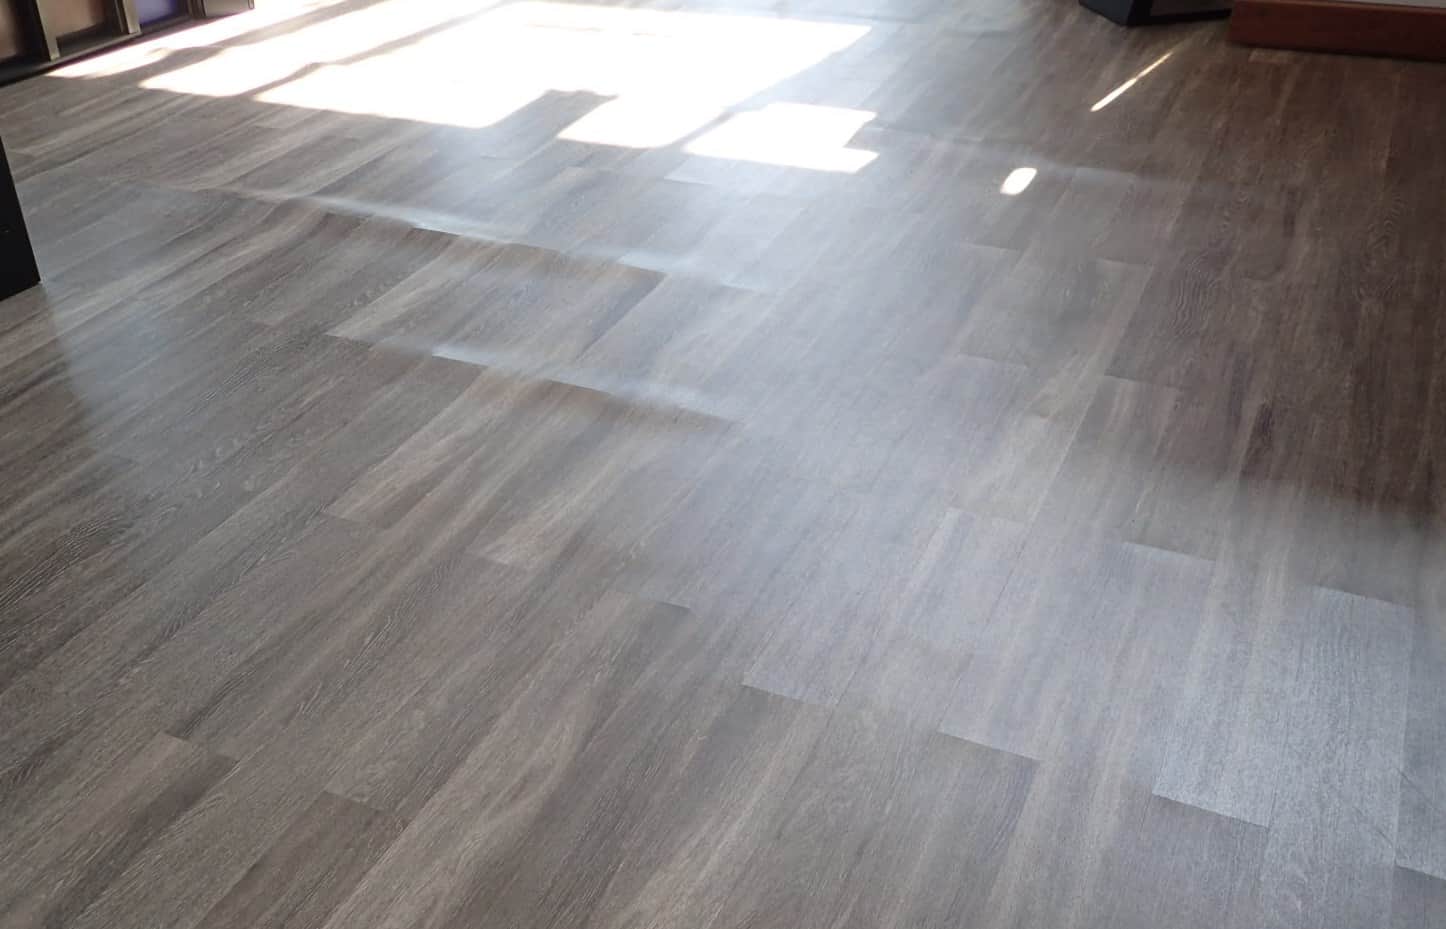 warping vinyl floor